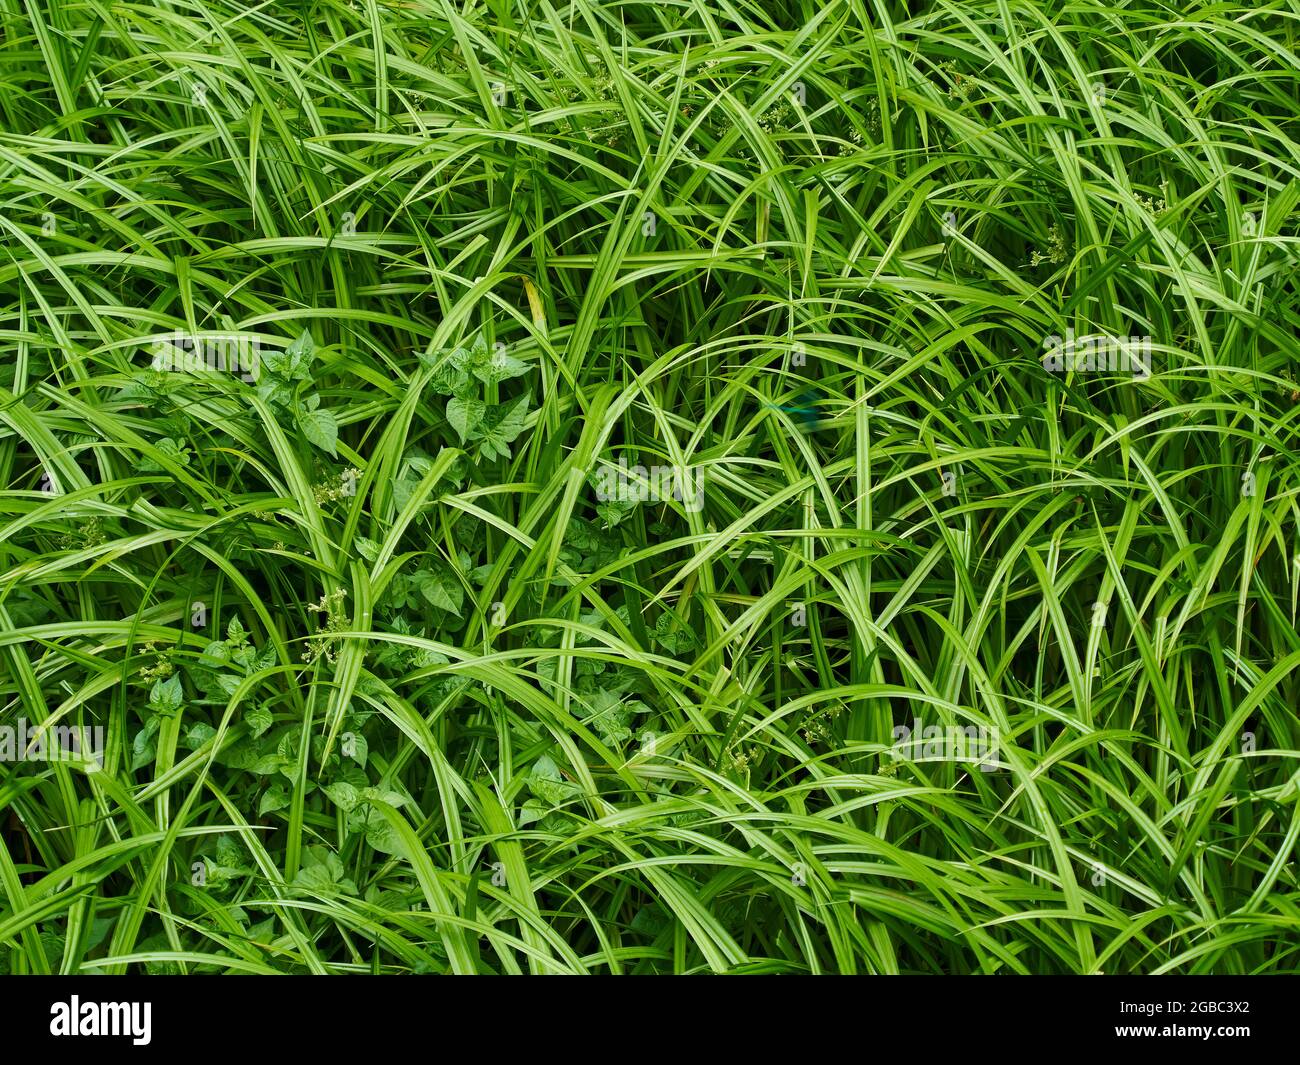 Ein Detail aus der britischen Landschaft - ein Fleck von reichem, grünem, frischem, unbebauten Gras und Pflanzen von oben. Stockfoto